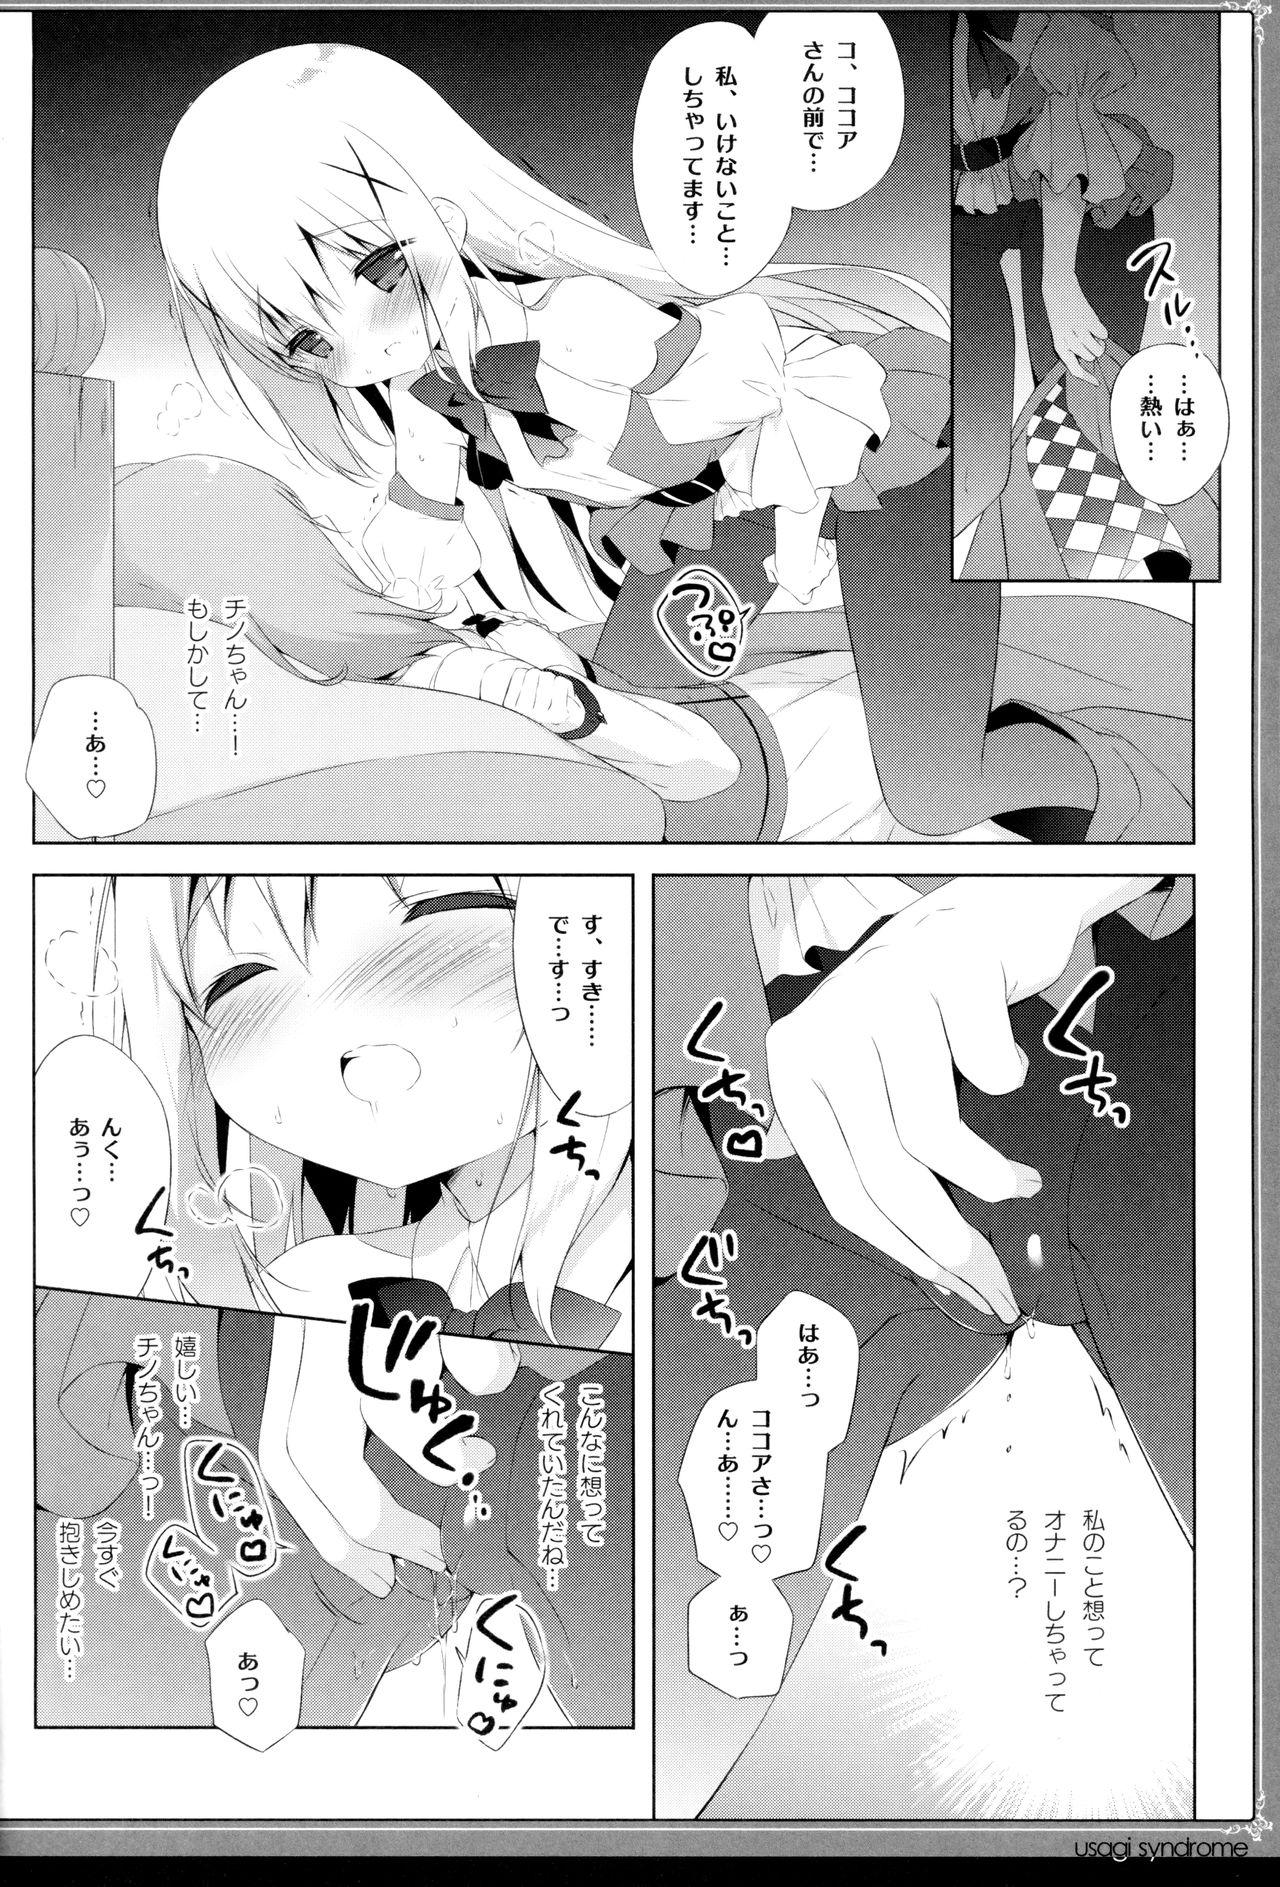 Double Usagi Syndrome 4 - Gochuumon wa usagi desu ka Buttplug - Page 9